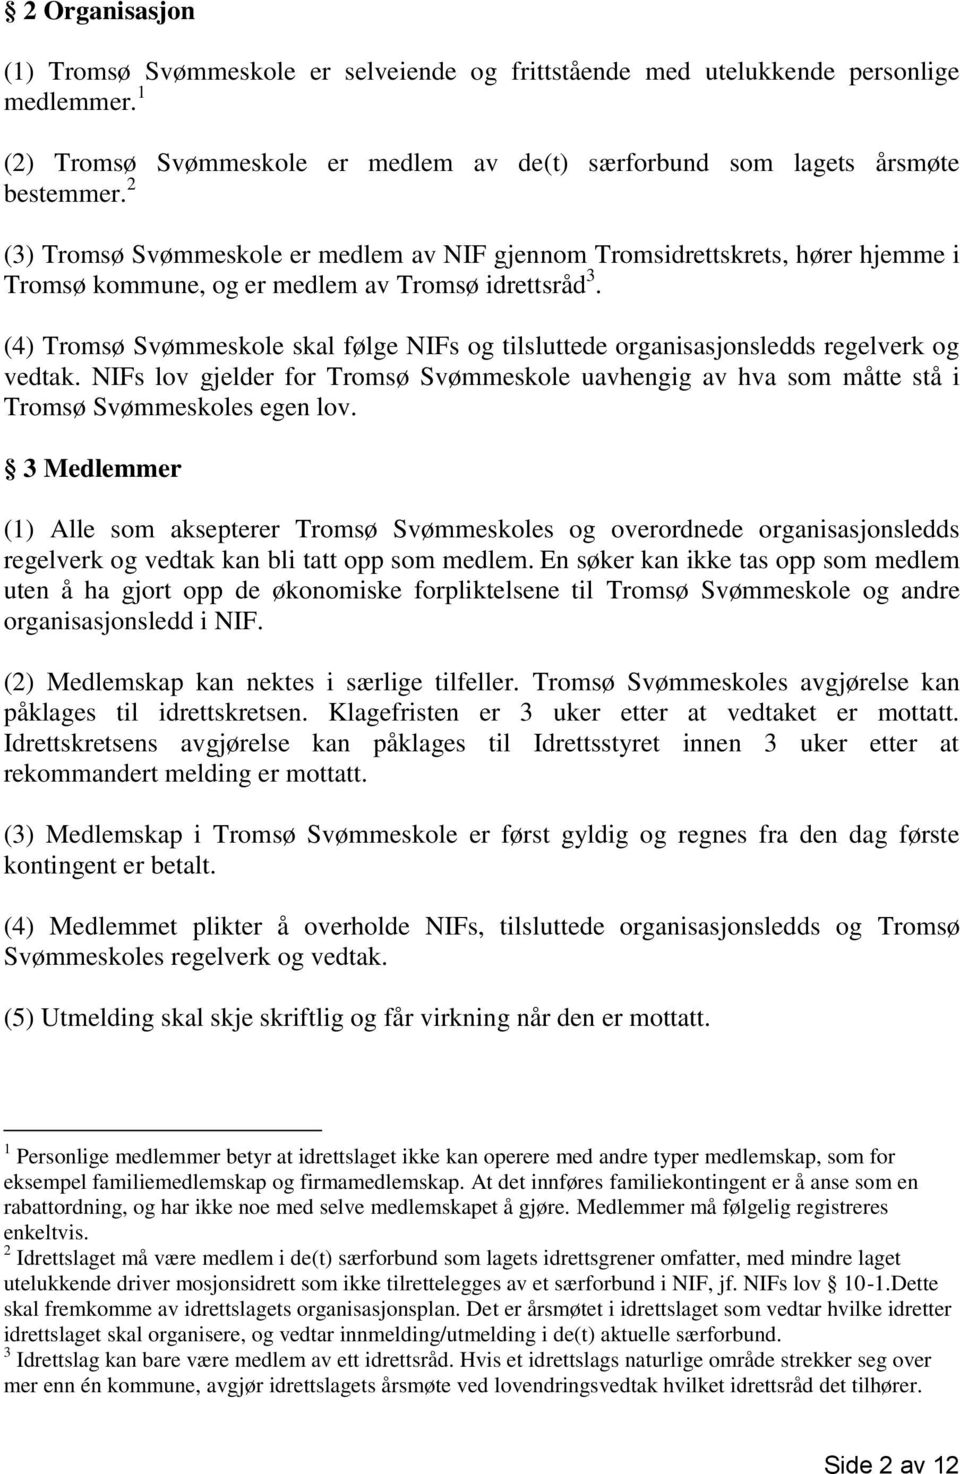 (4) Tromsø Svømmeskole skal følge NIFs og tilsluttede organisasjonsledds regelverk og vedtak. NIFs lov gjelder for Tromsø Svømmeskole uavhengig av hva som måtte stå i Tromsø Svømmeskoles egen lov.